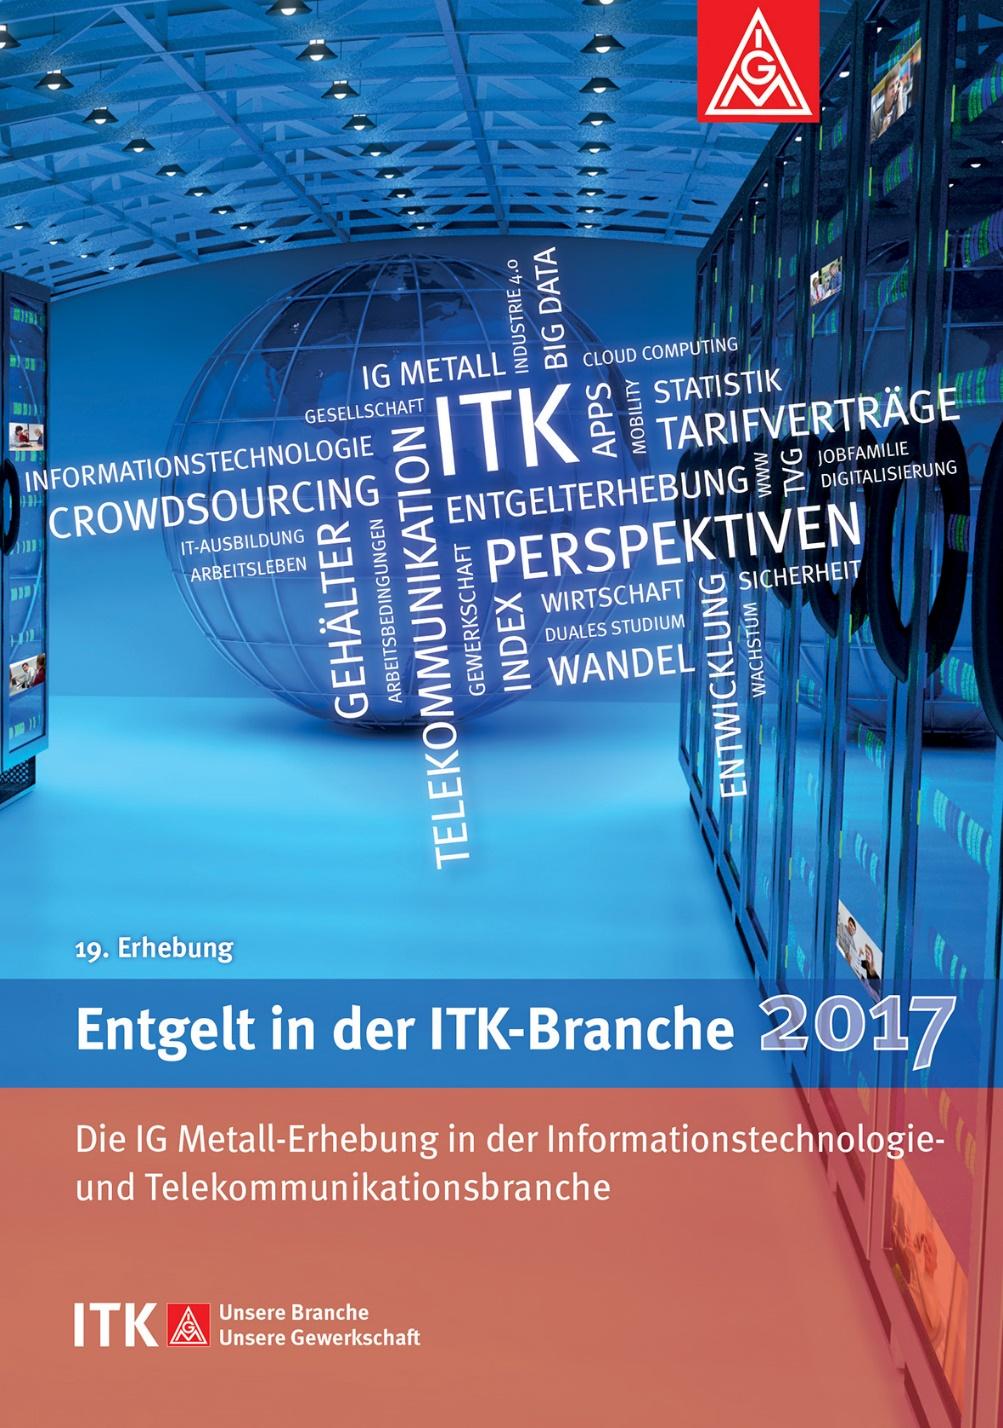 Mehr Informationen über Entgelte in der ITK-Branche l Entgelt in der ITK-Branche 2017 l l Eine Erhebung im 4.